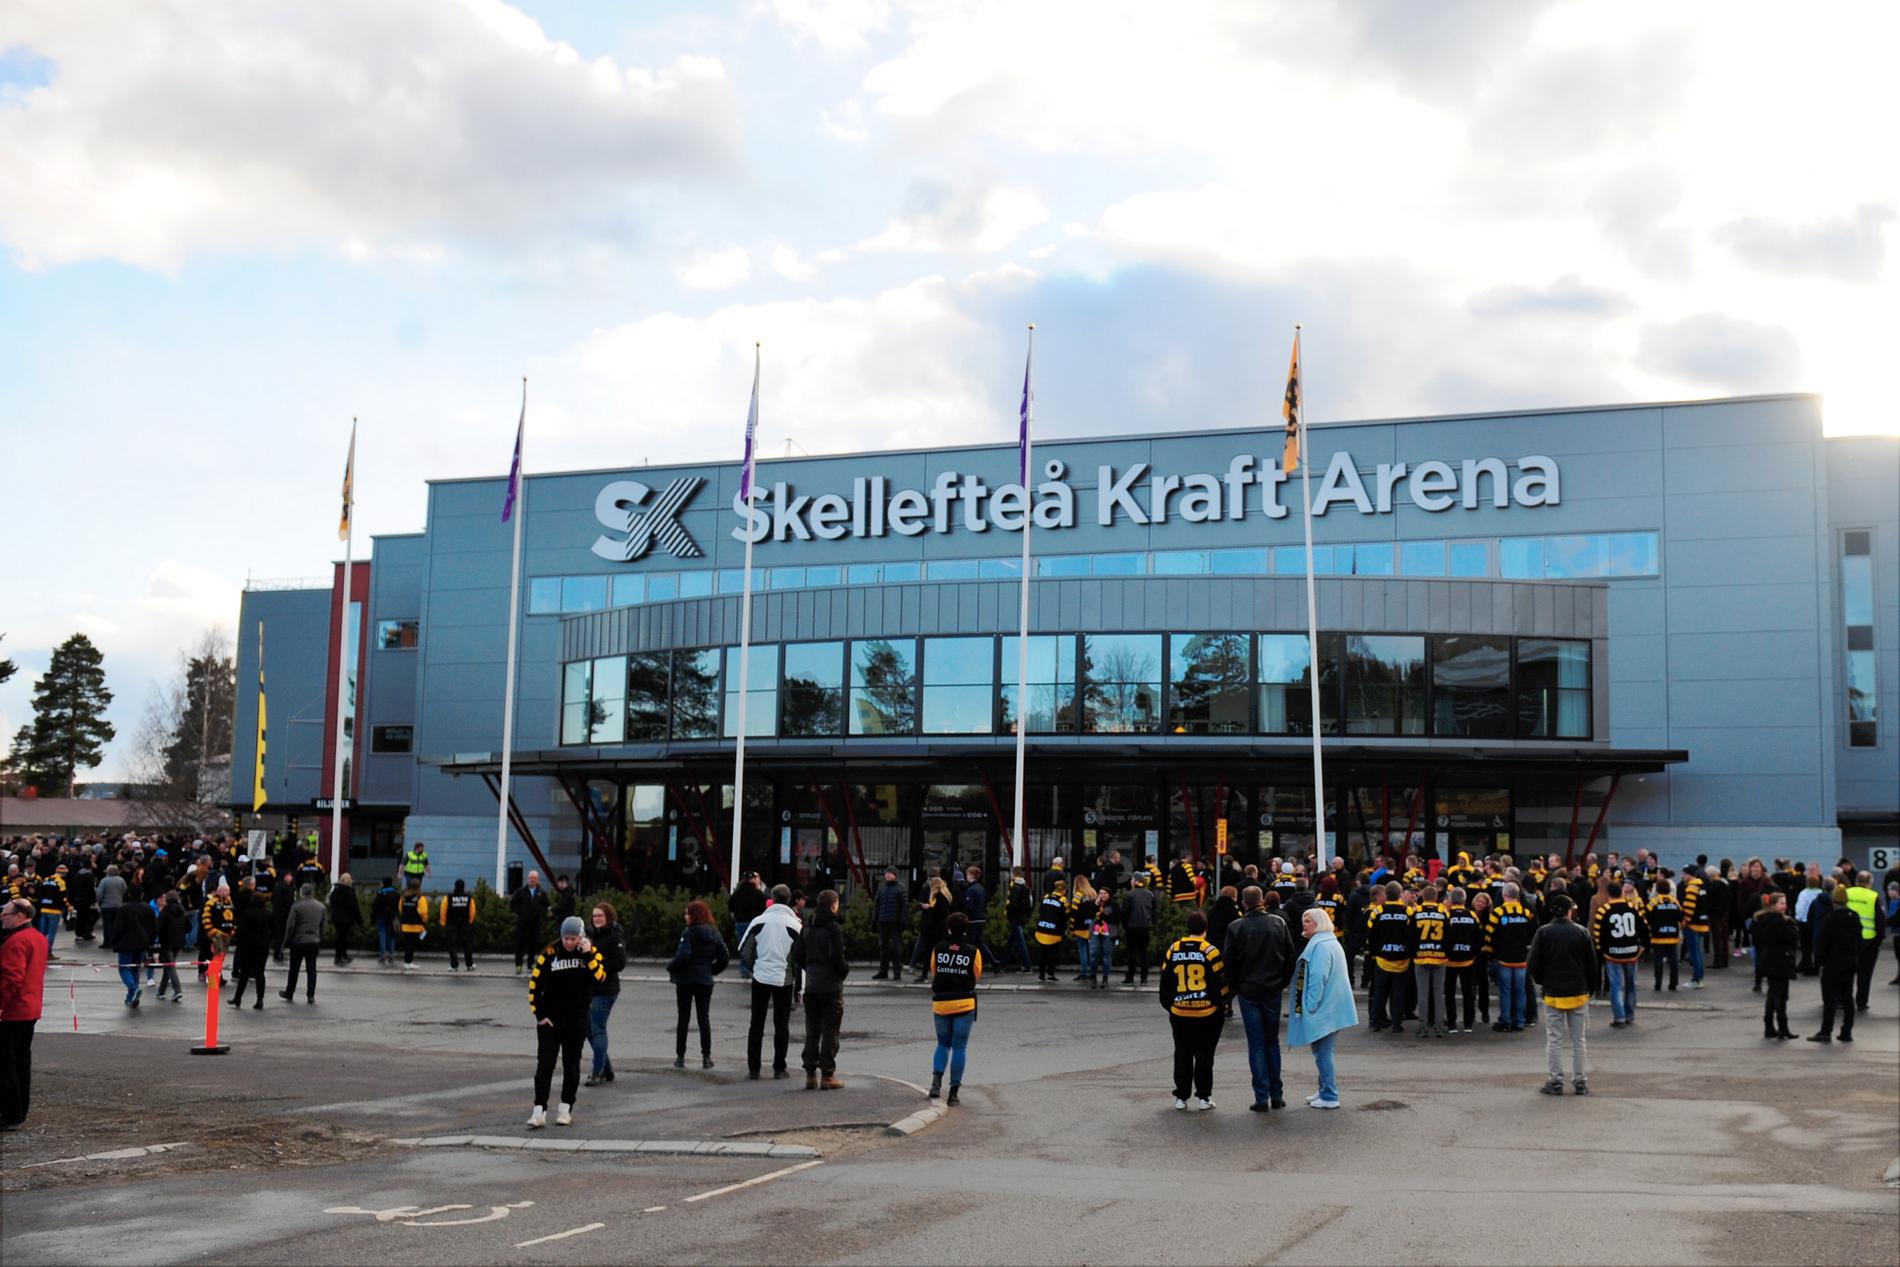 Brandlarmet i Skellefteå Kraft Arena gick klockan 18.00 och ett tusental personer fick utrymma.